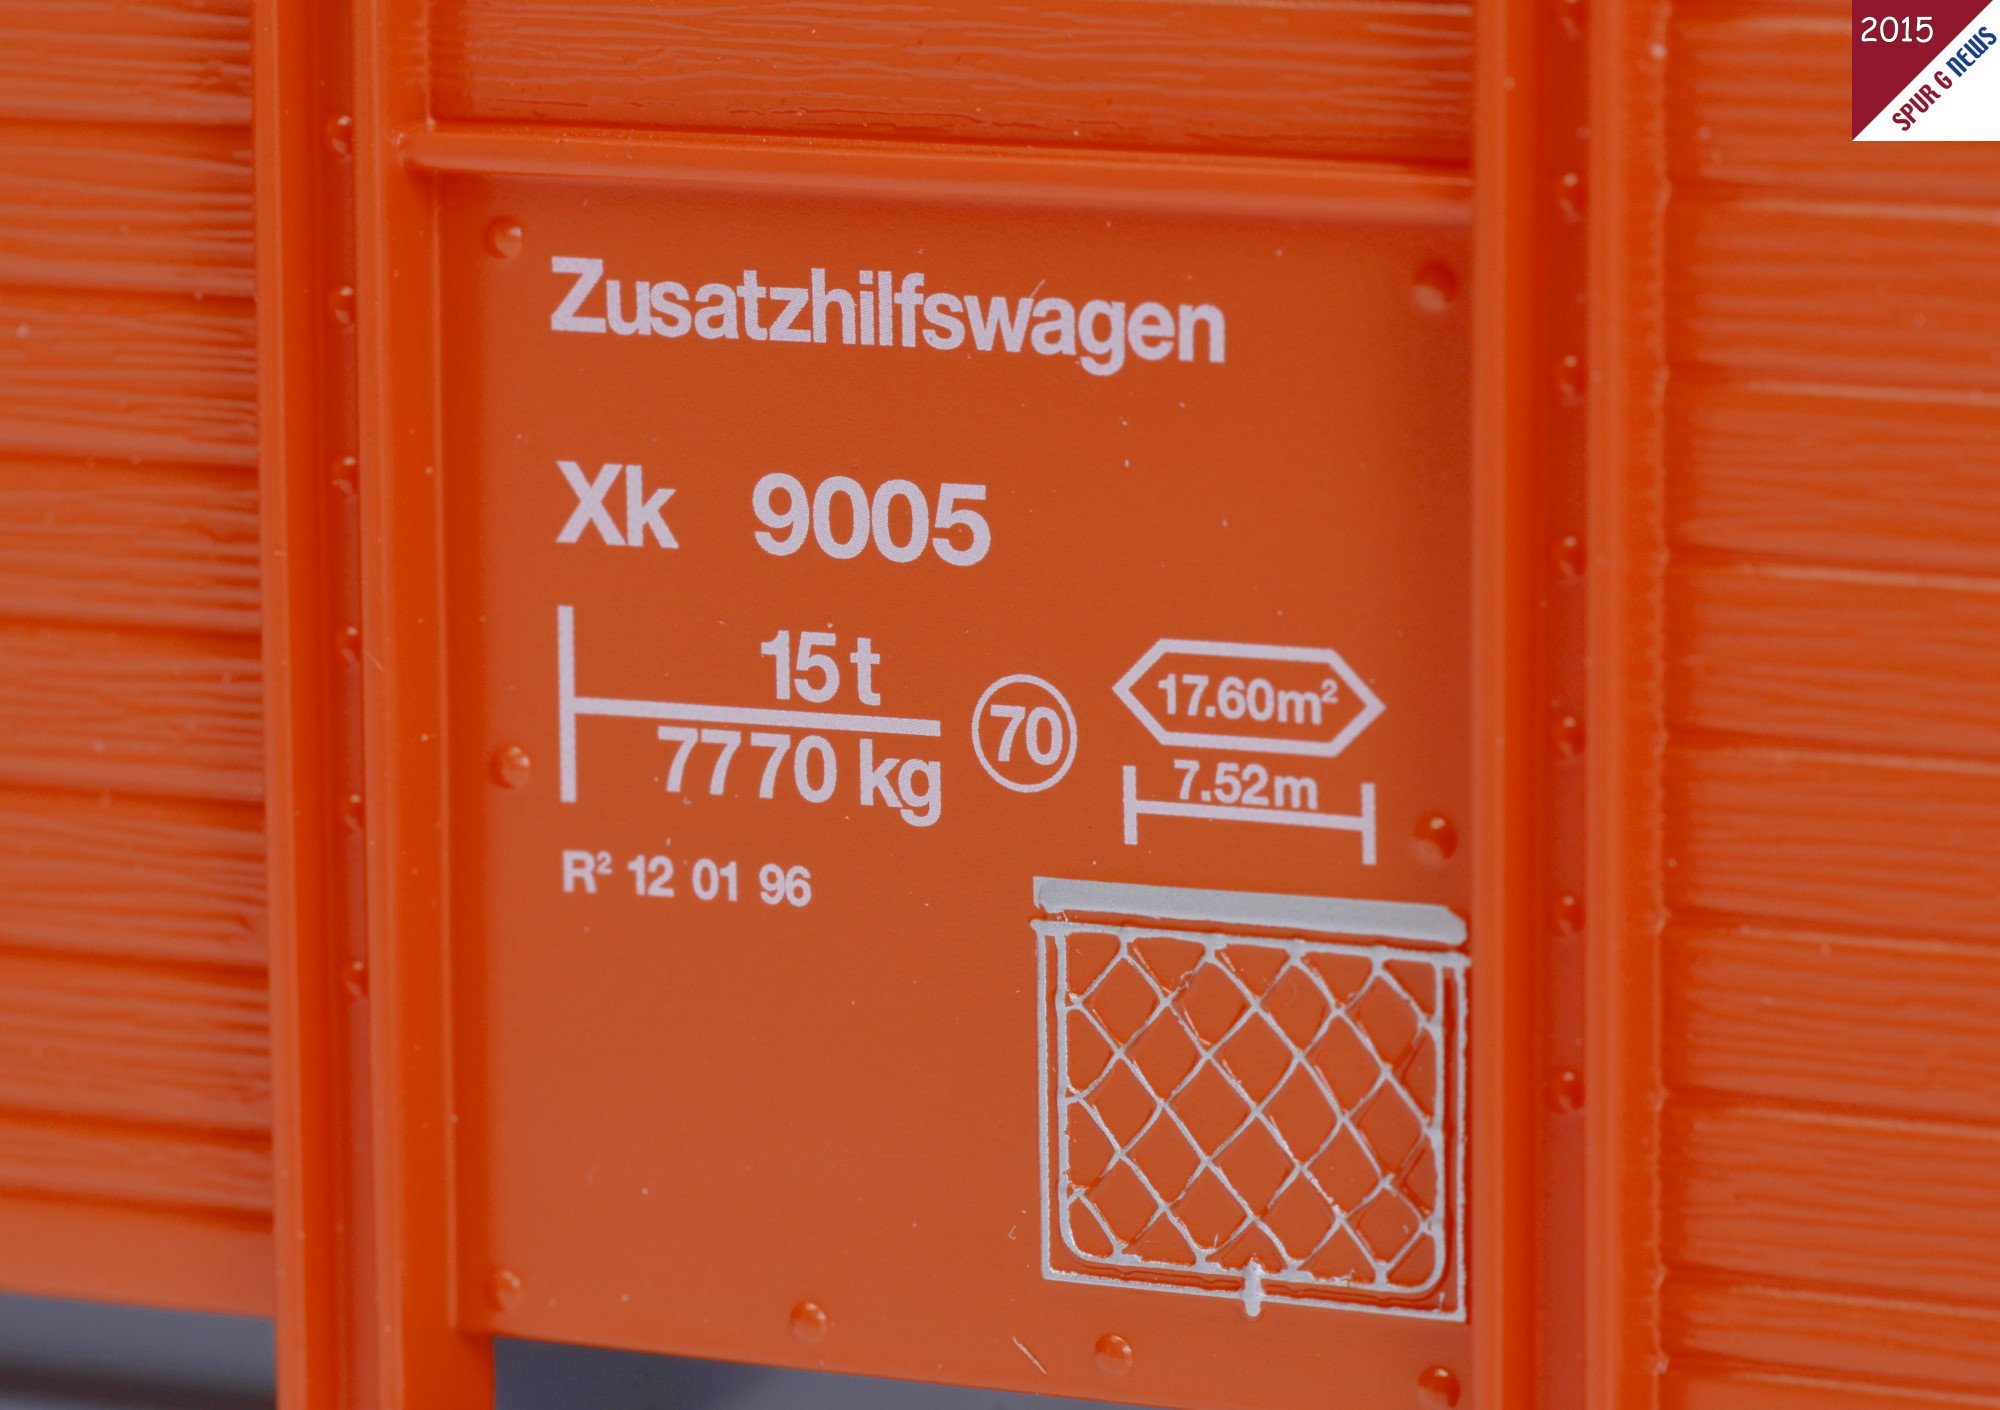 Das Schild mit der Spezifikation des Zusatzhilfswagen Xk 9005 wurde gut bedruckt und die Angaben sind stimmig mit dem Original. 